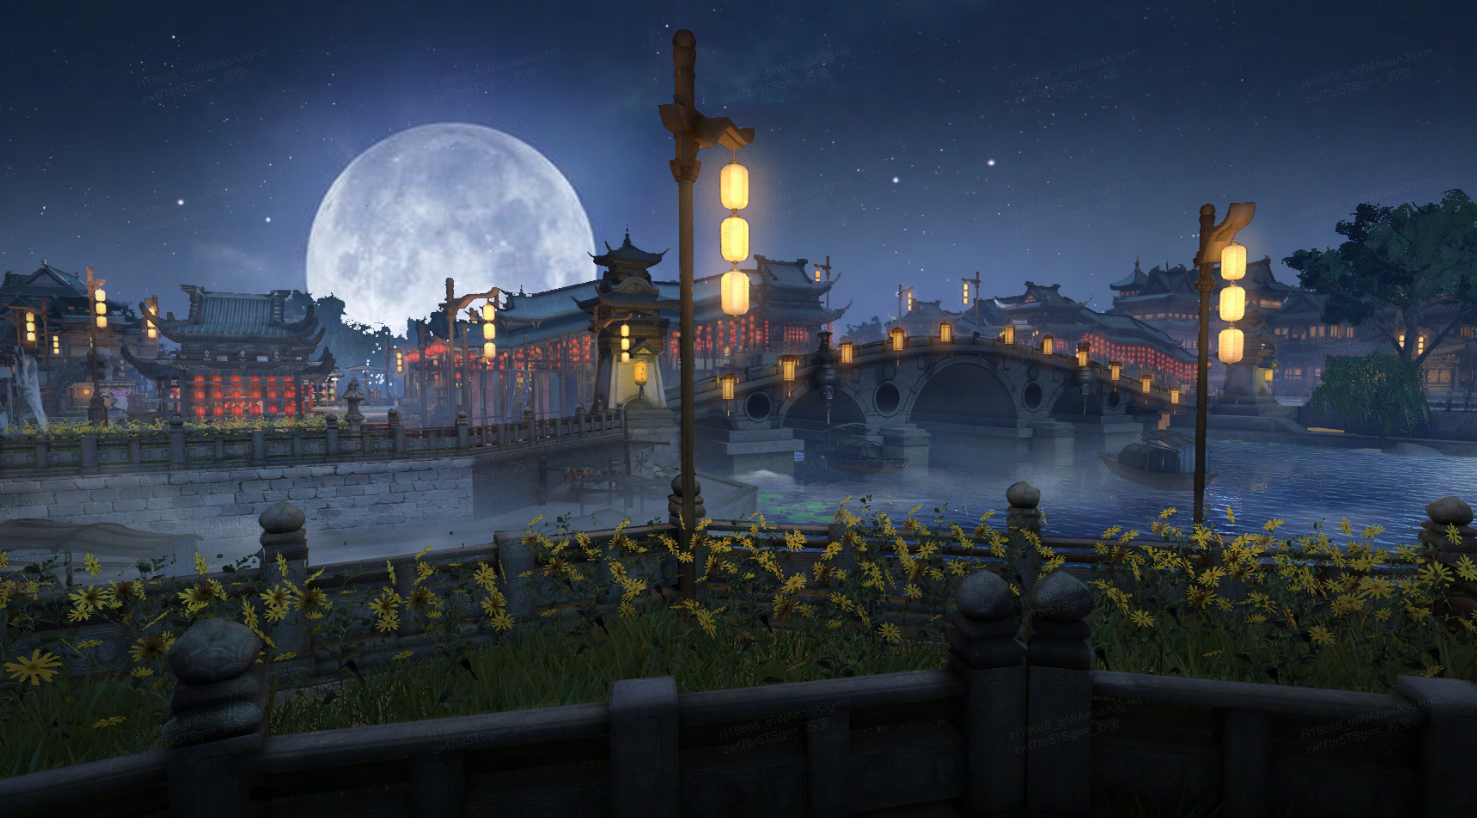 古风建筑的桥梁在月光下显得宁静祥和，远处灯笼温暖地照亮，近处花草随风轻摆，融合出一幅美丽的夜景画卷。